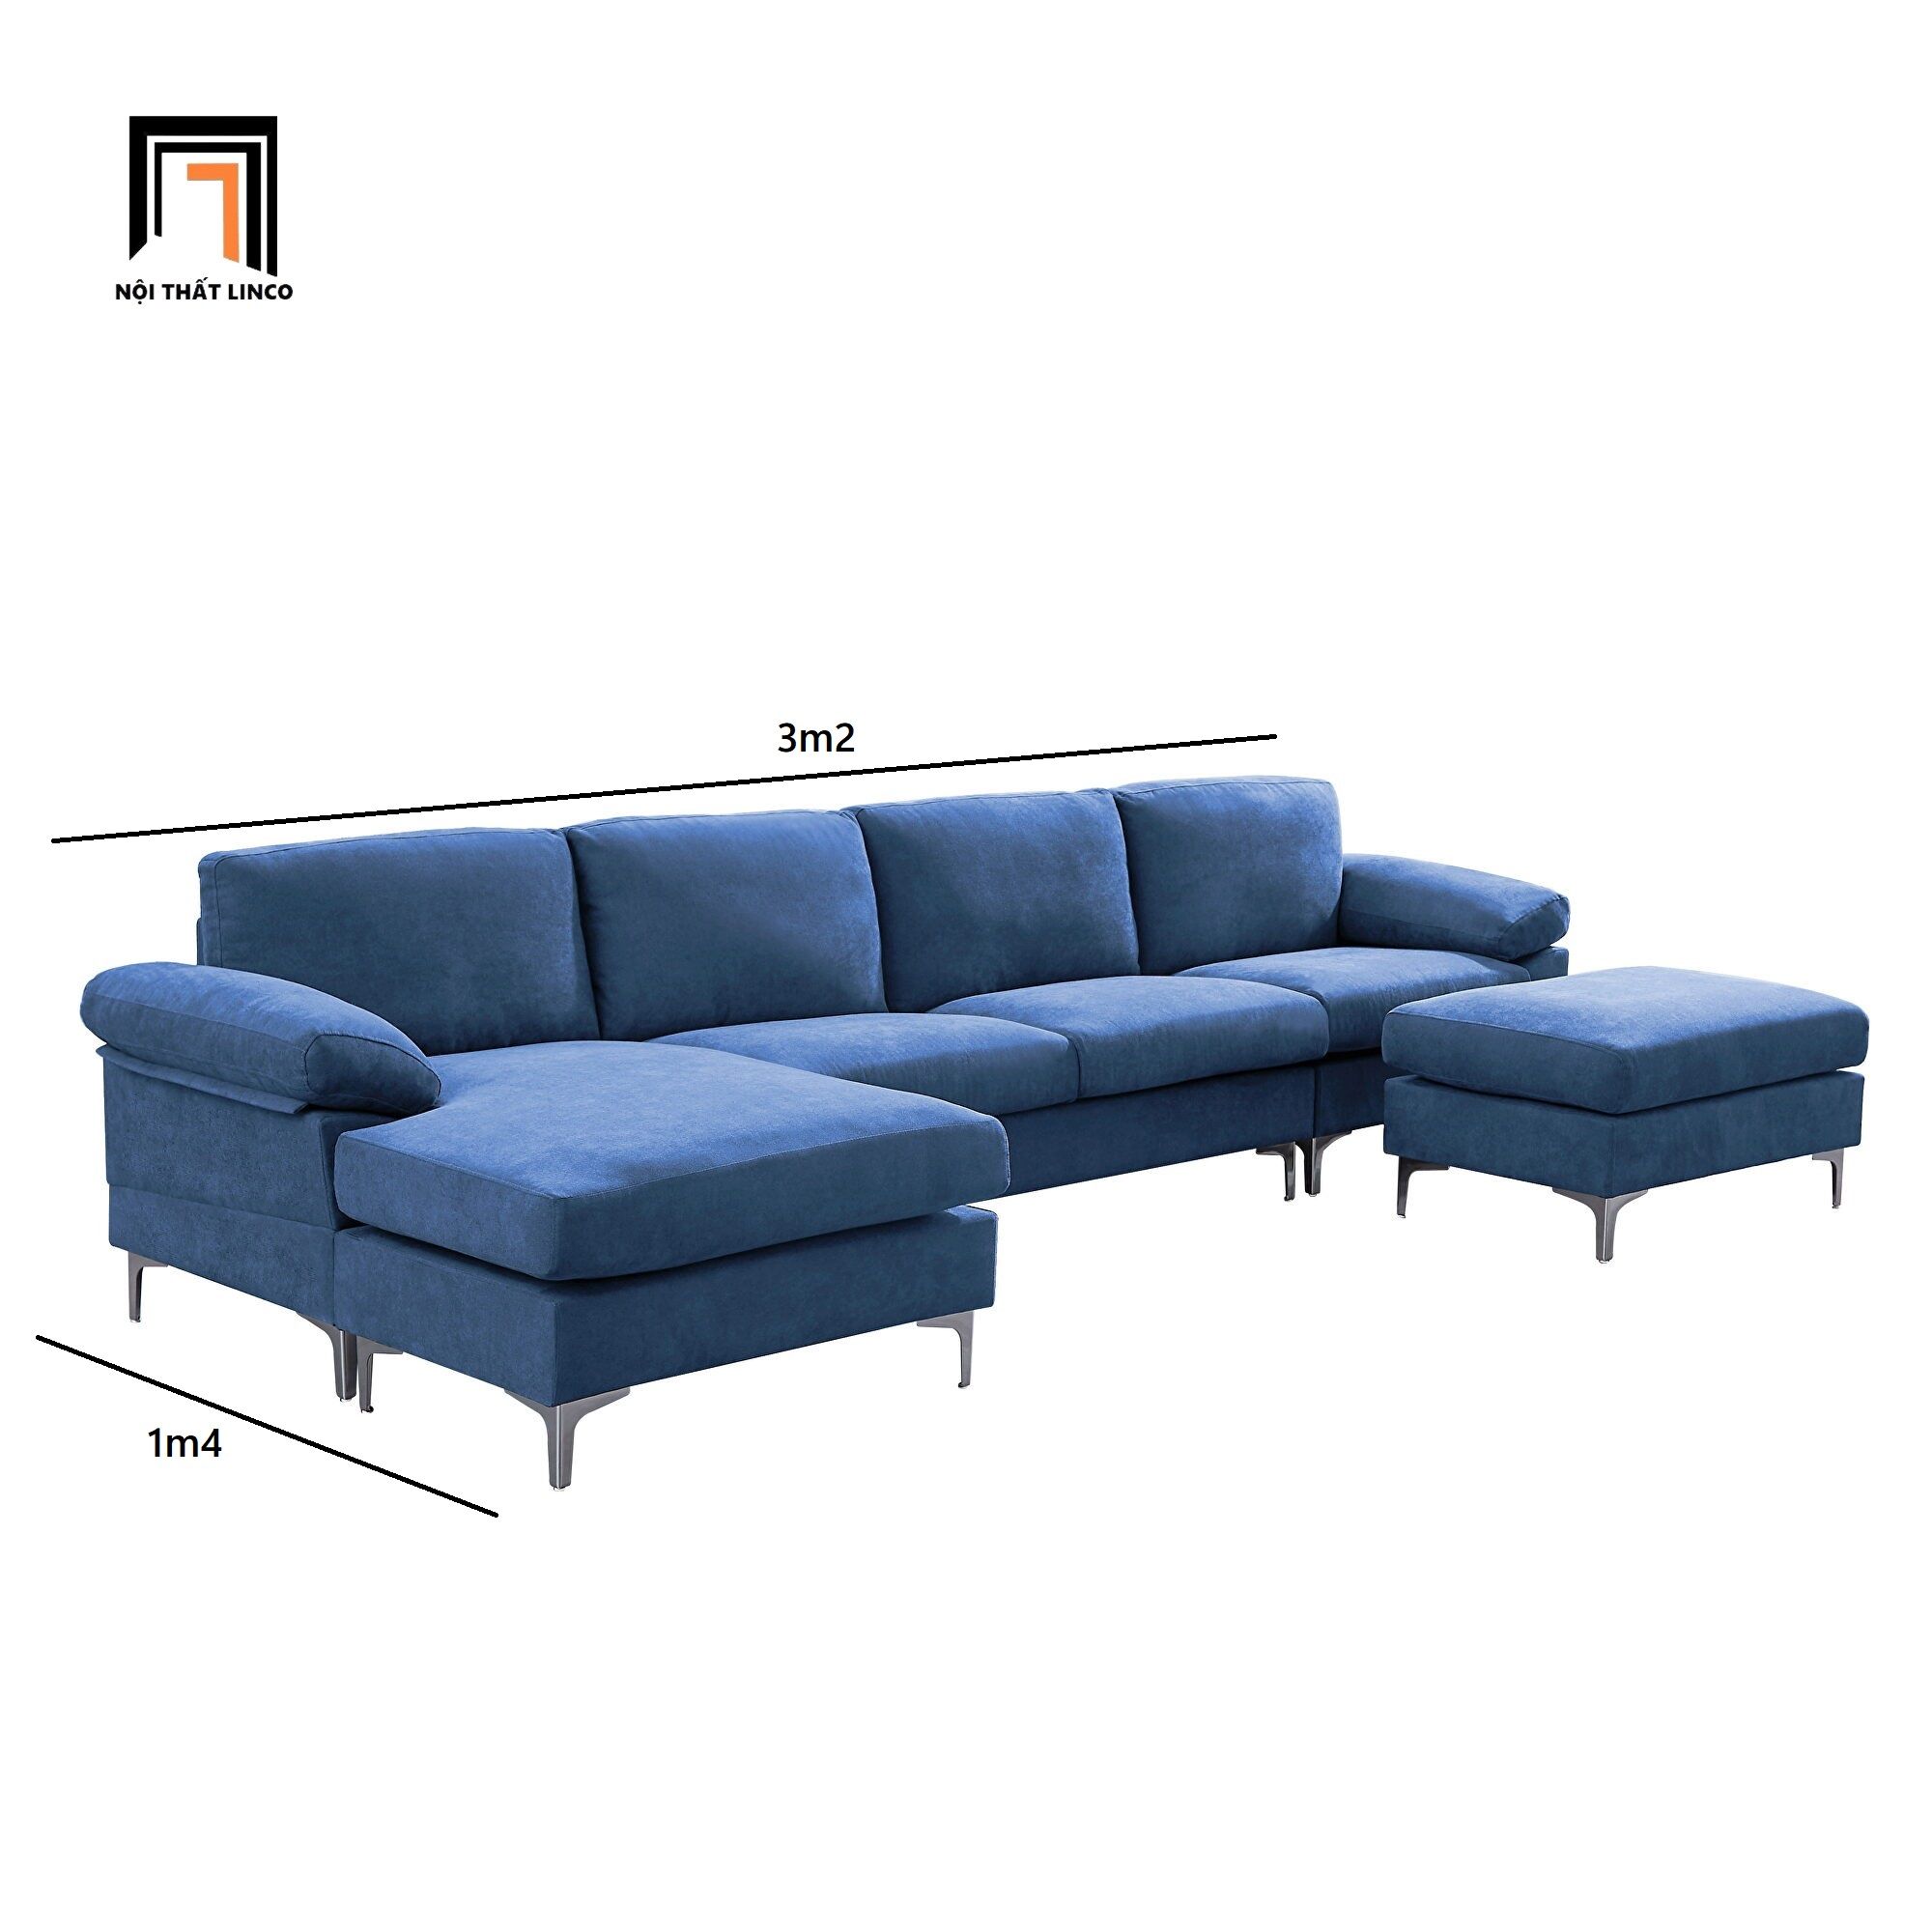  Bộ ghế sofa chữ U GT64 Denavy 3m2 x 1m4 vải cotton mềm 